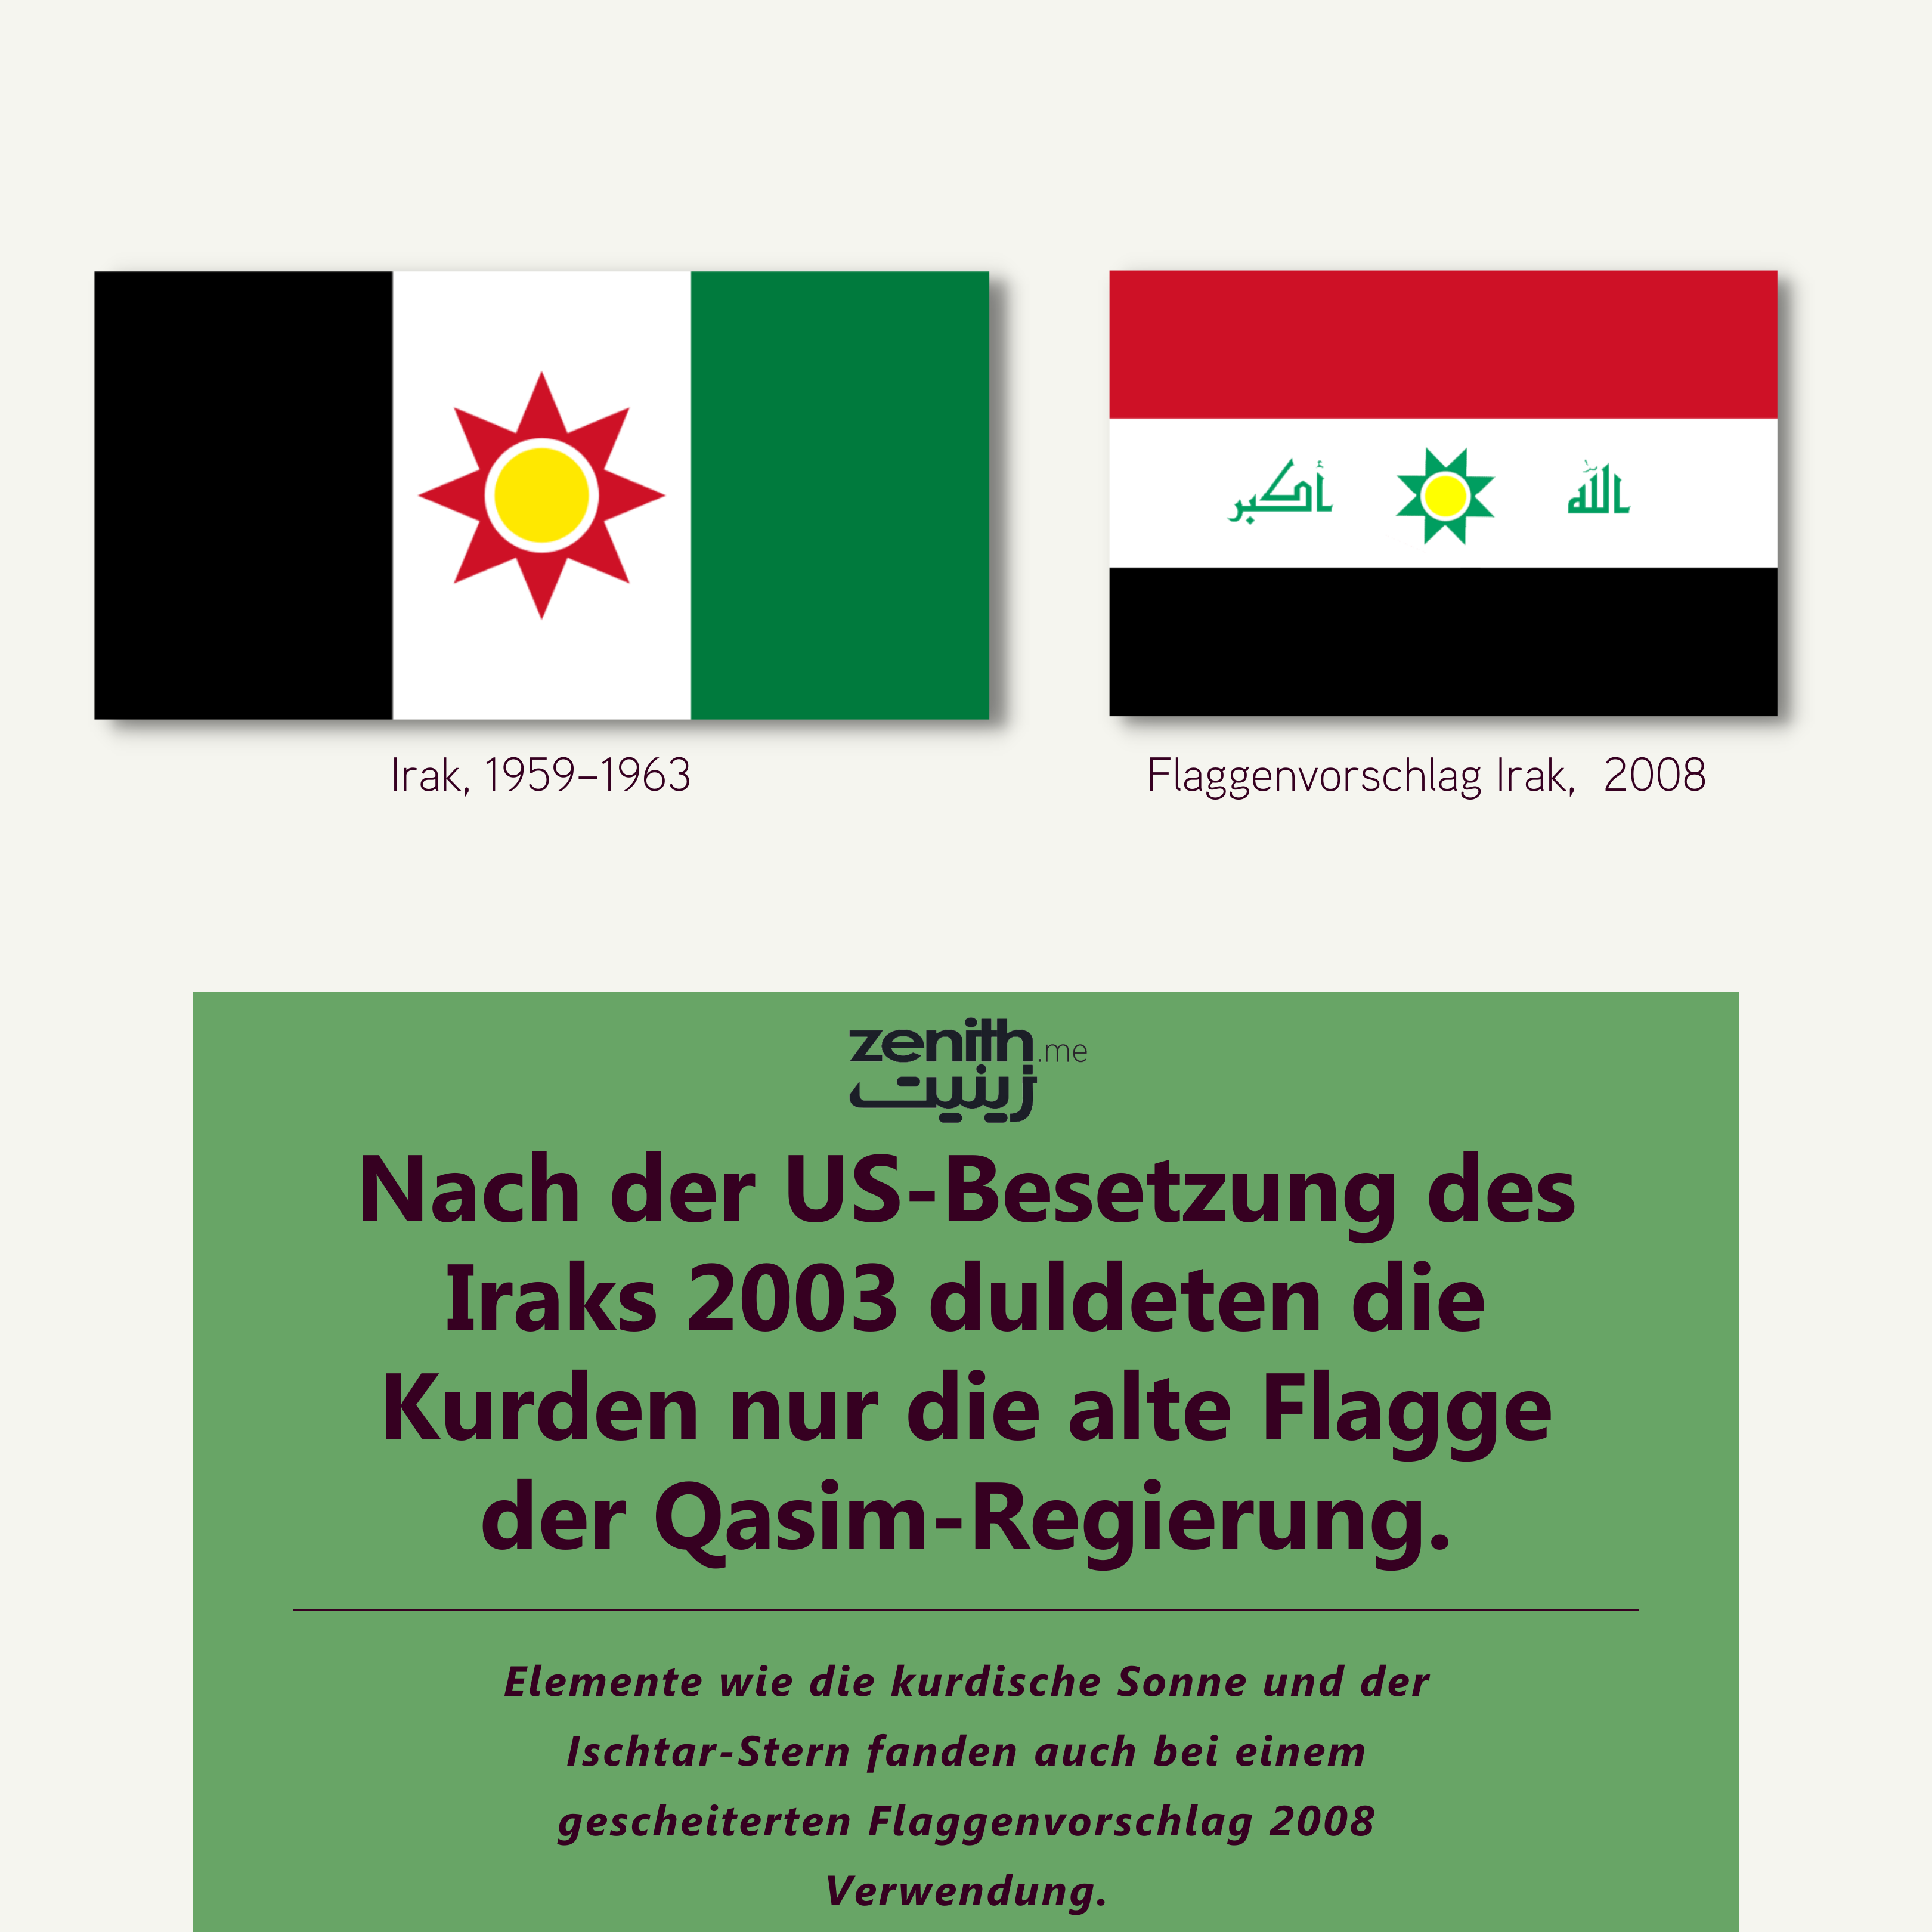 Nach der US-Besetzung des Iraks 2003 duldeten die Kurden nur die alte Flagge der Qasim-Regierung.